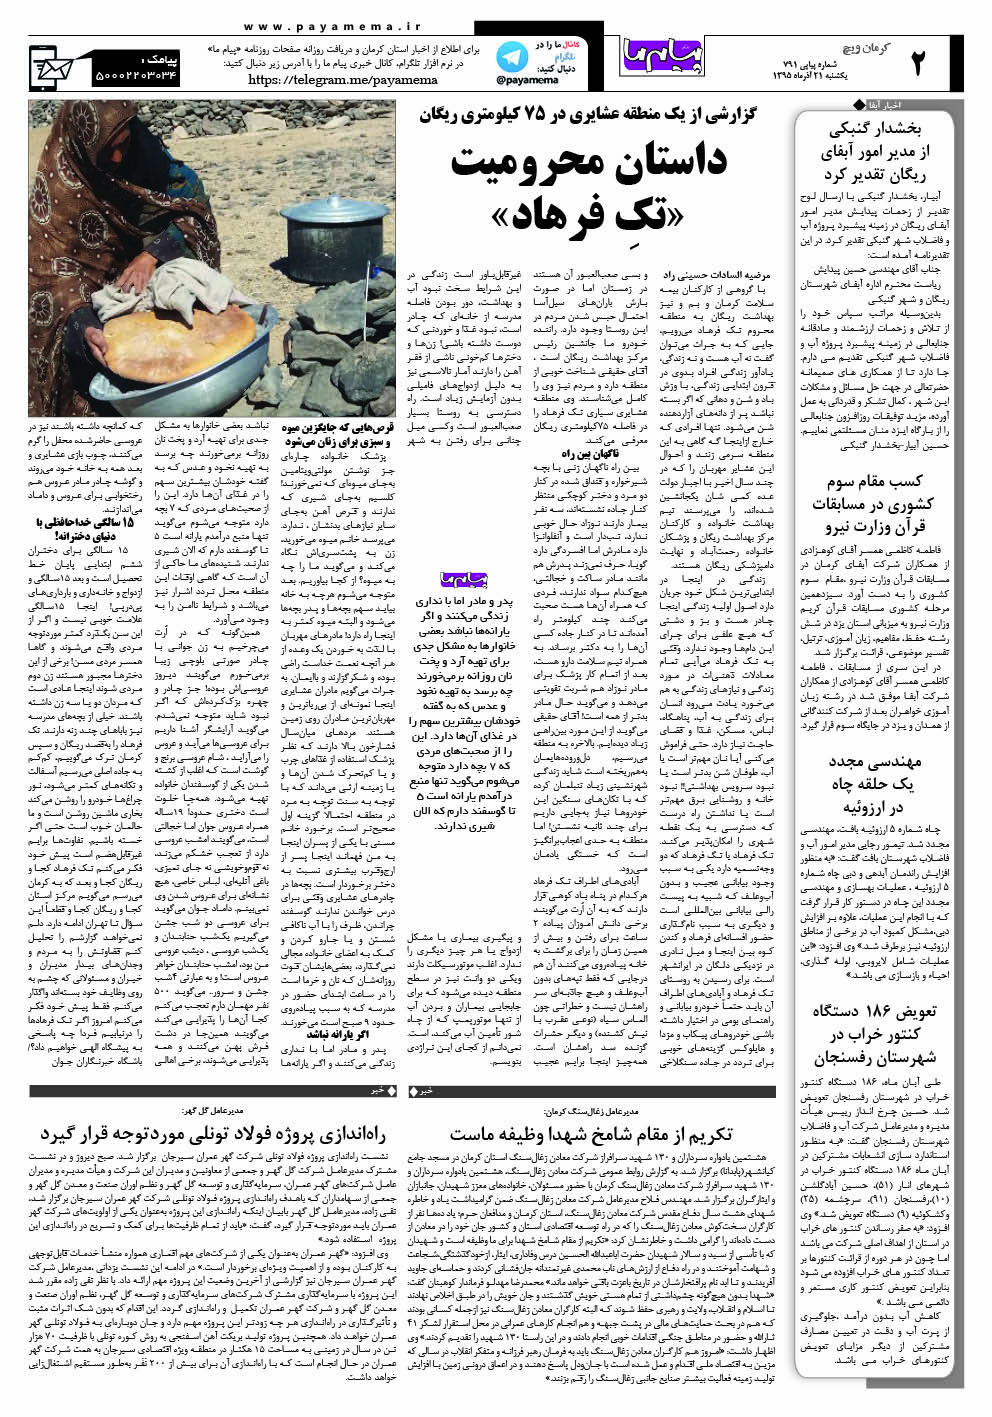 صفحه کرمان ویچ شماره 791 روزنامه پیام ما